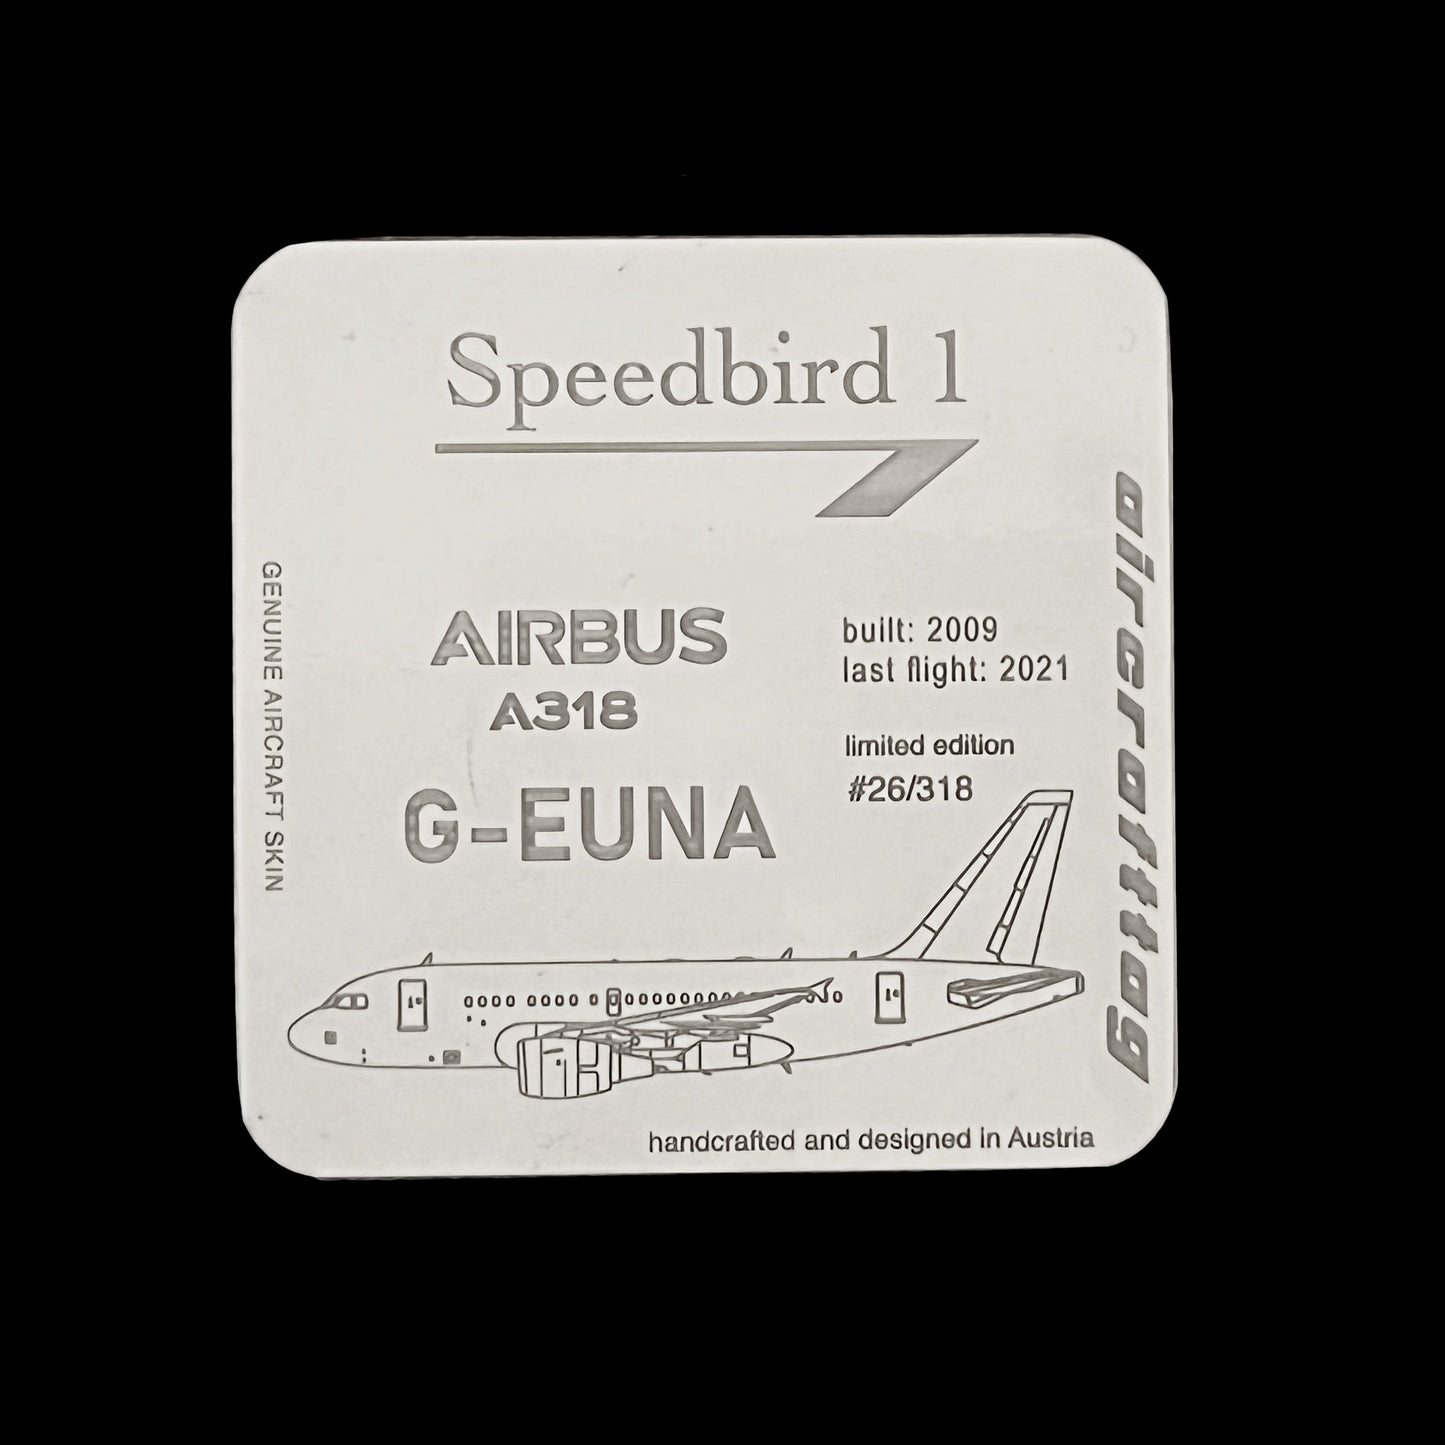 Coaster - Airbus A318 - Speedbird 1 - G-EUNA - British Airways